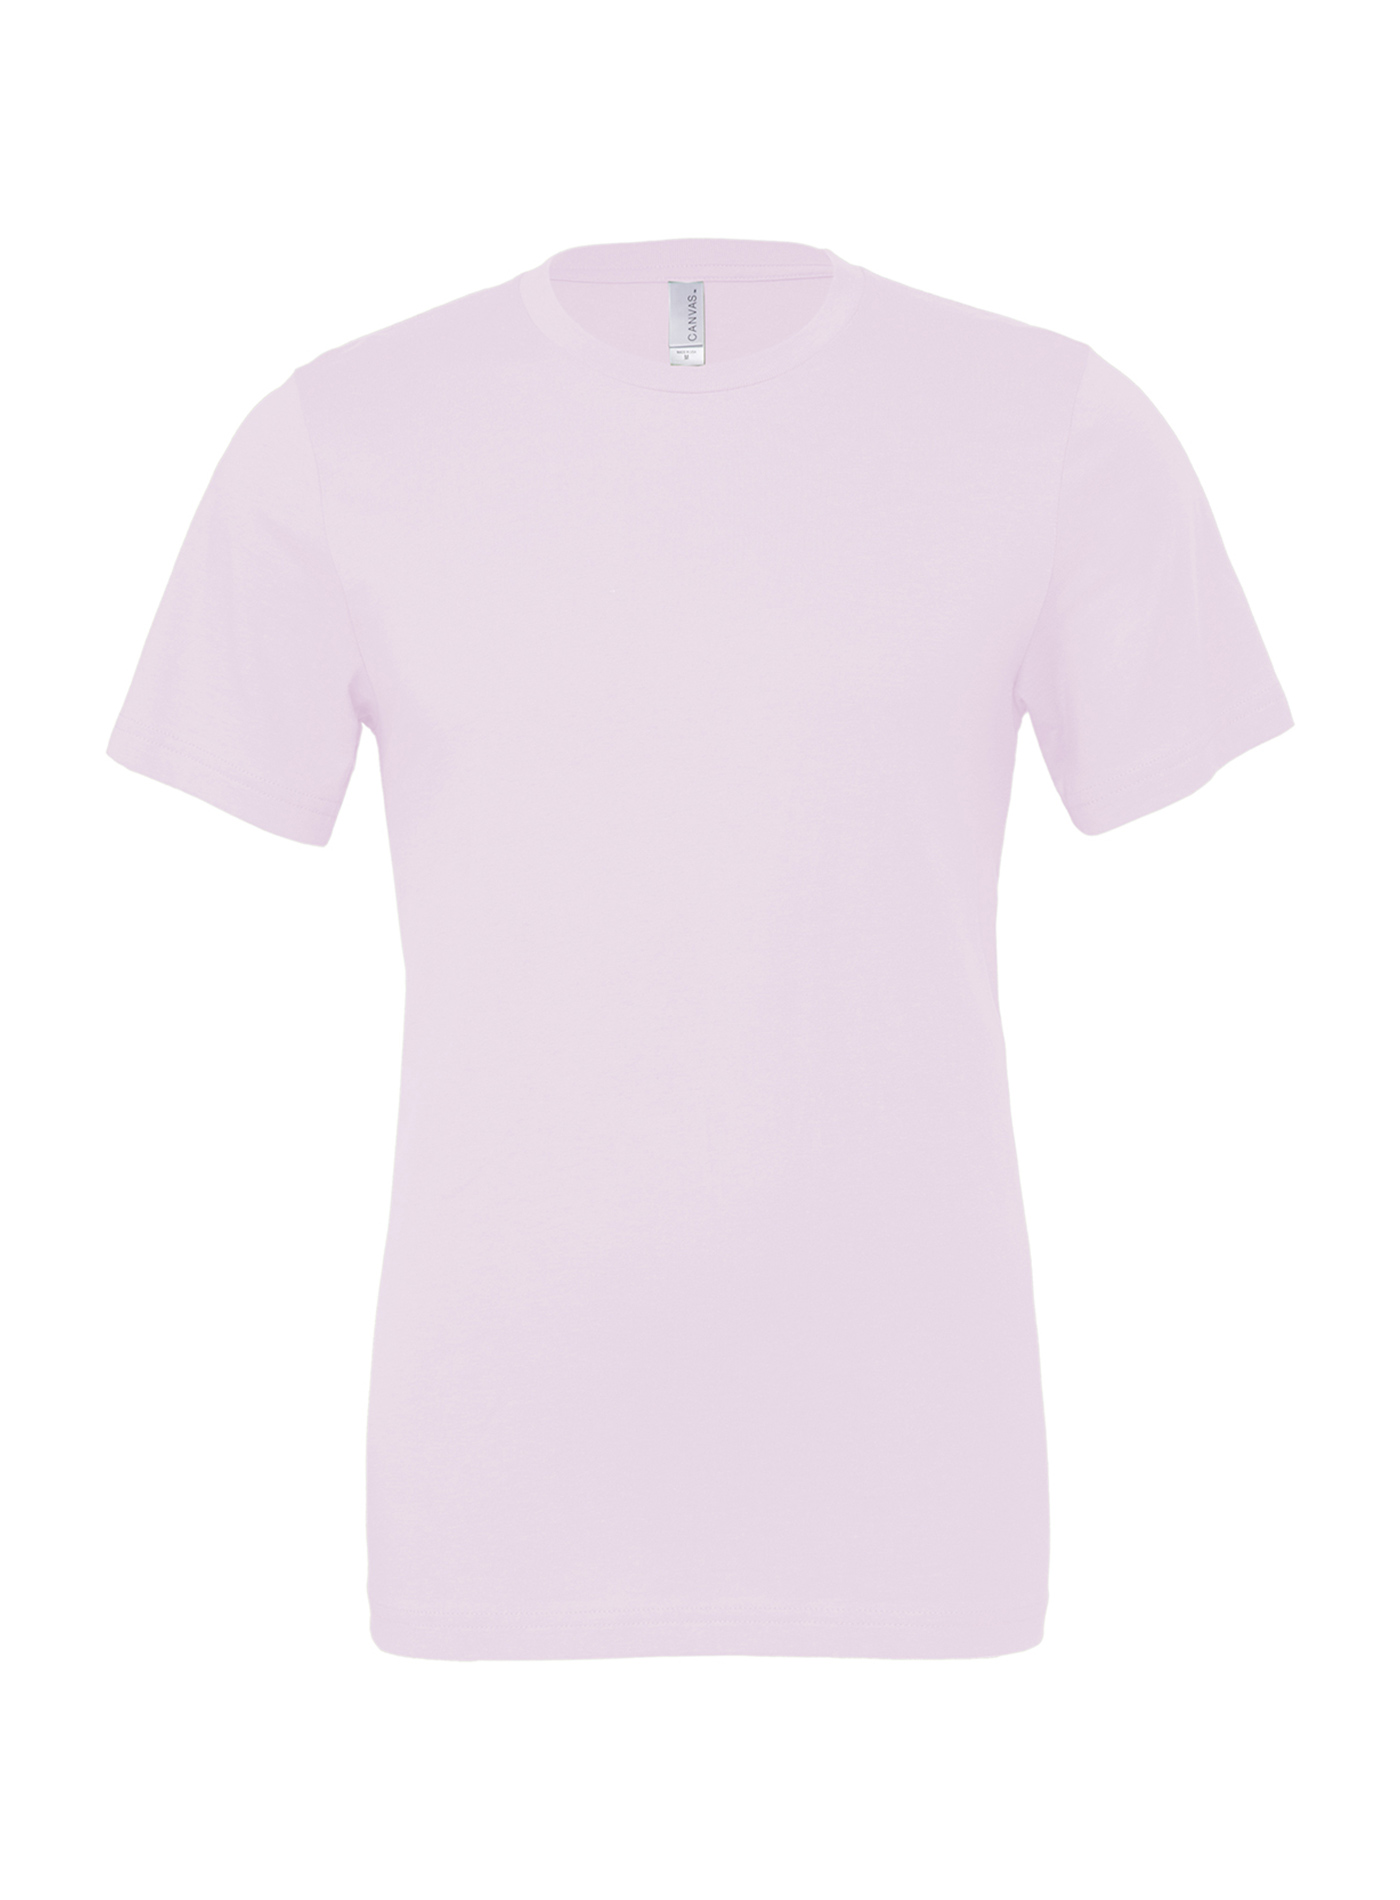 Unisex tričko Bella + Canvas Jersey - Bledě růžová S